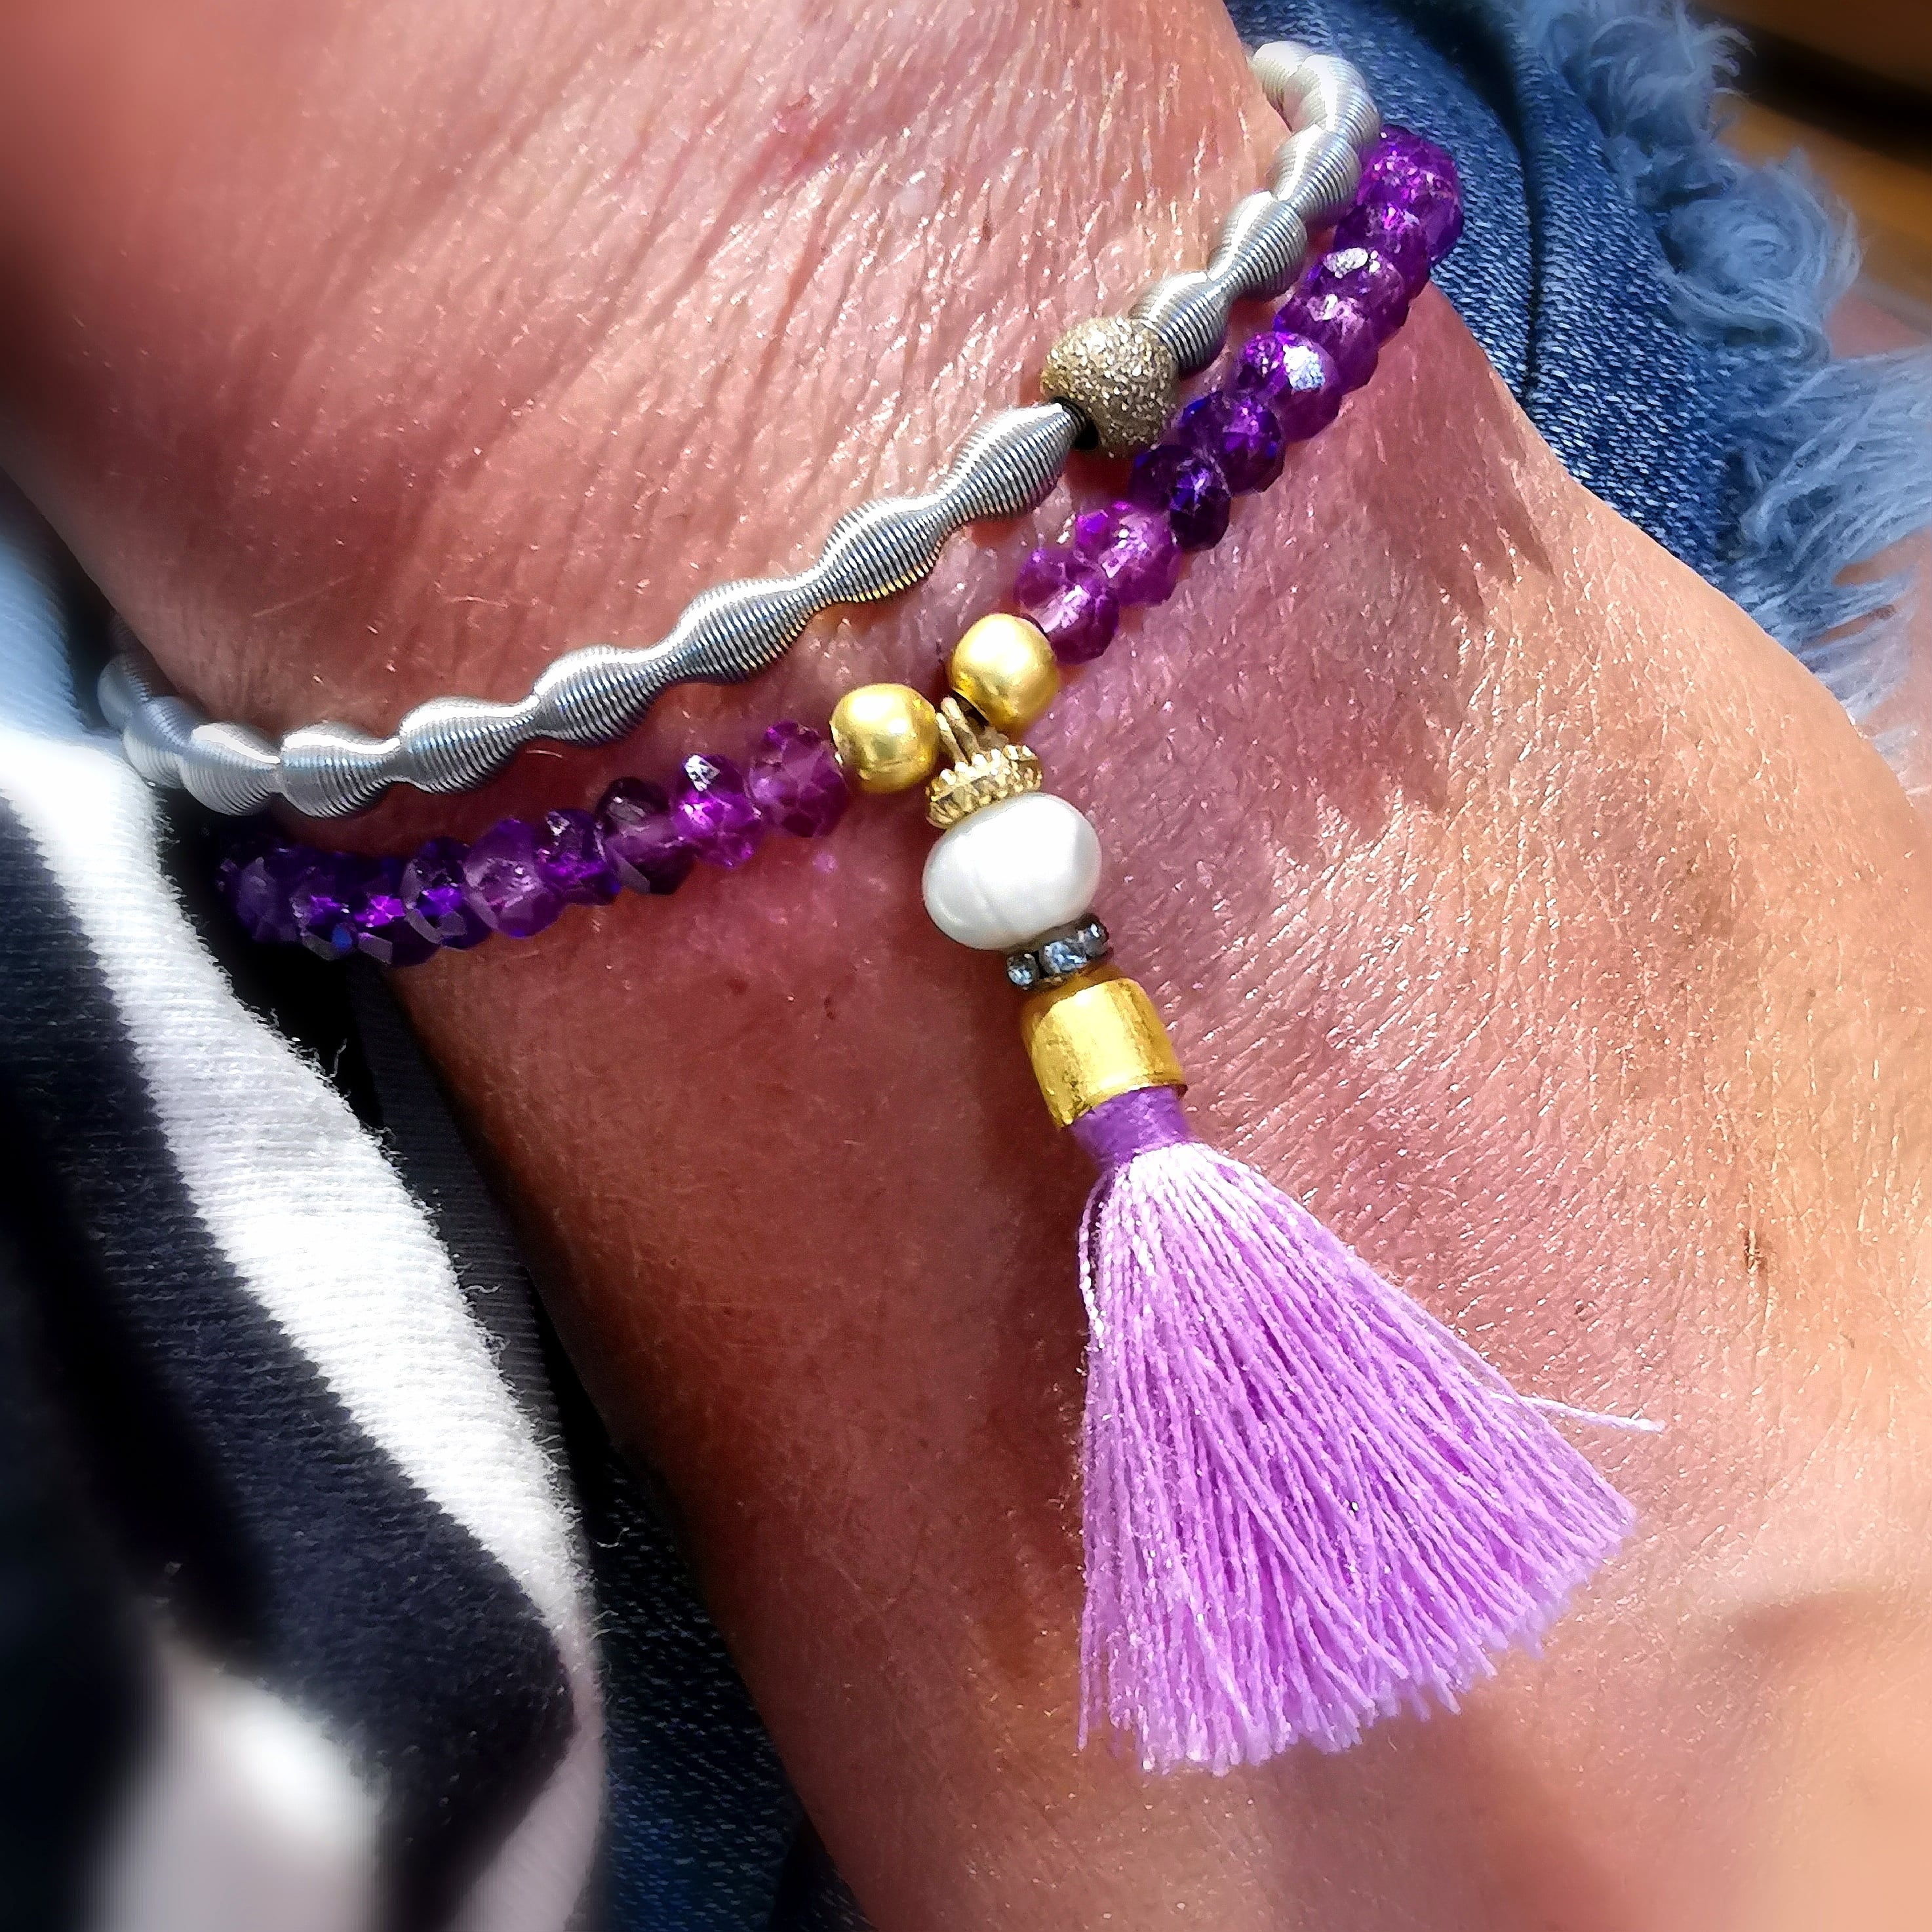 Hippie Karma Schmuck Armband Set Bijou lila mit Kristallen, Troddel Charms, Quasten - Freiheit und Inspiration